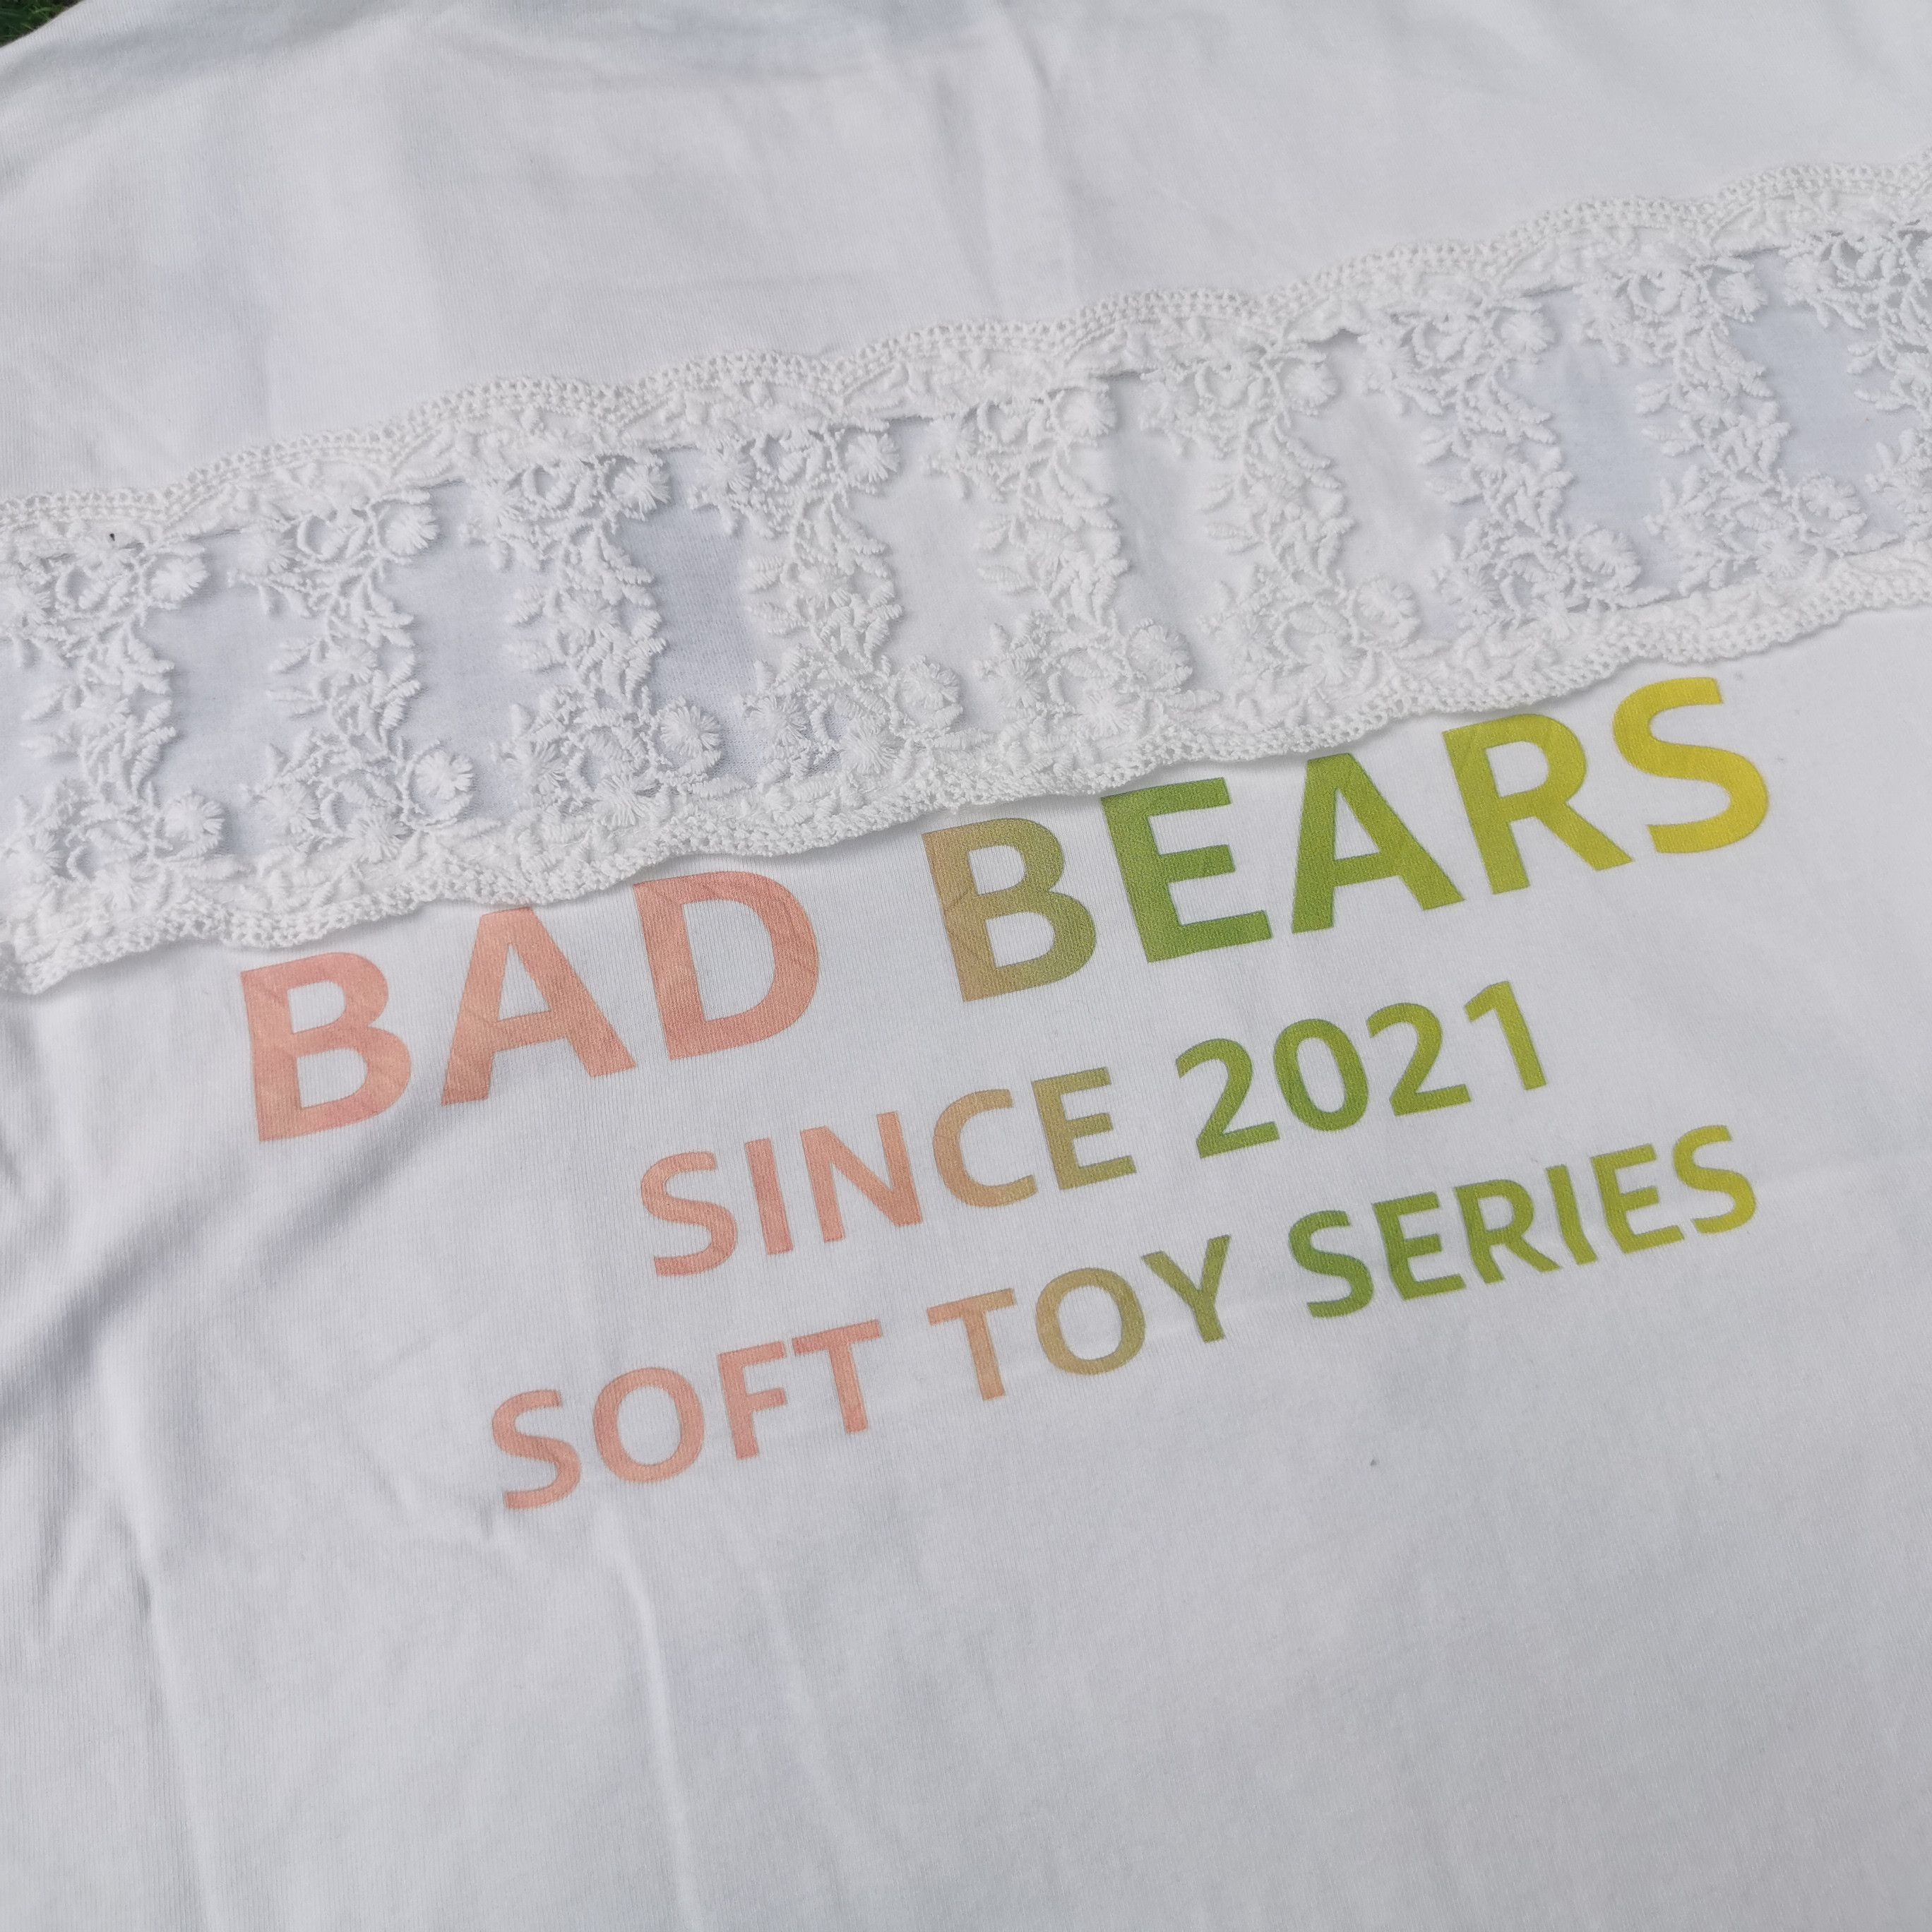 Vintage Bad Bears Soft Toy Series Tshirt - 4